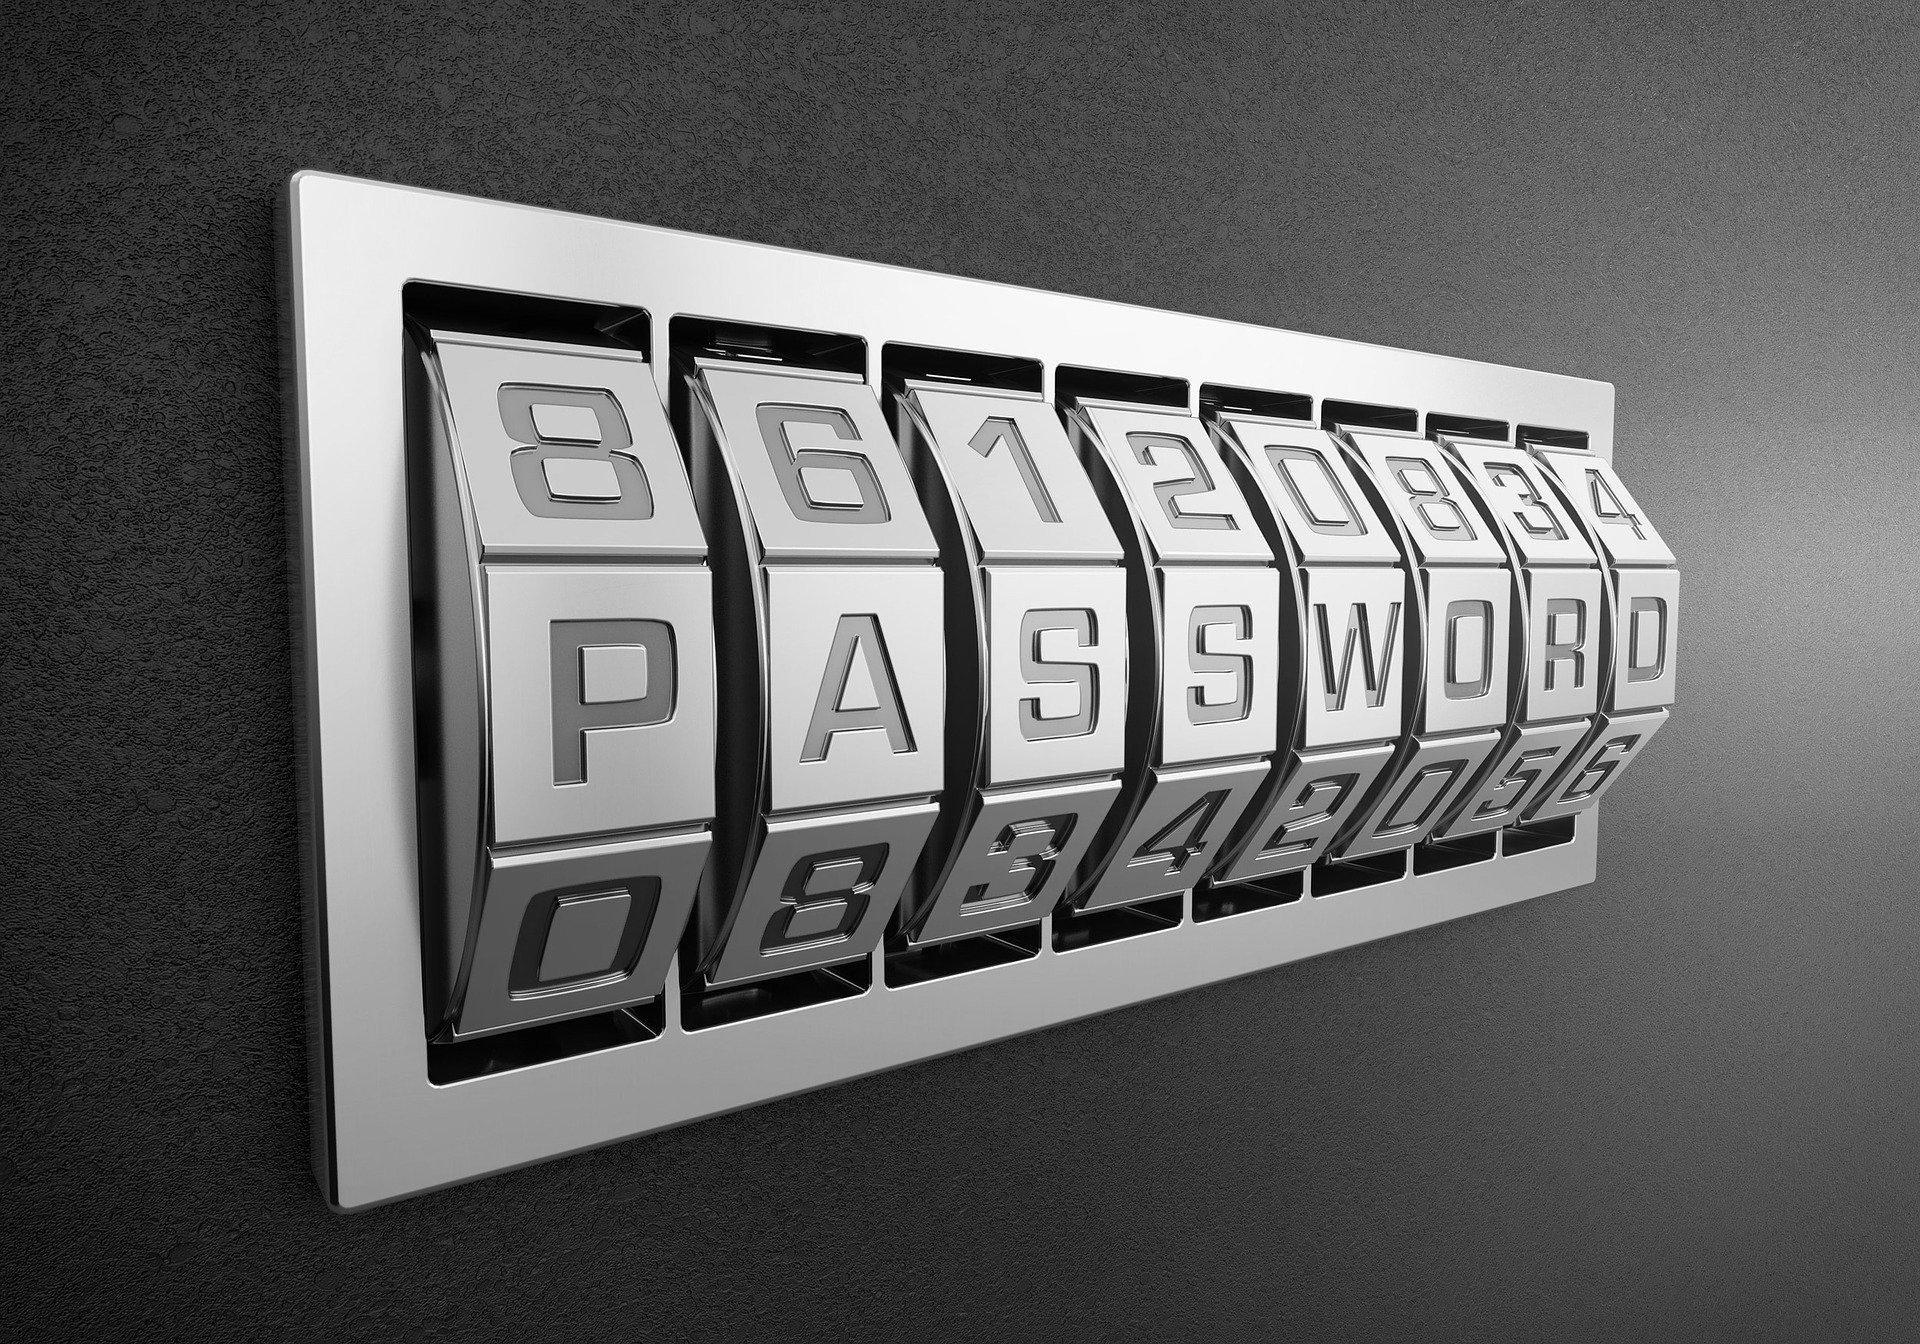 Как часто нужно менять пароли — советы экспертов